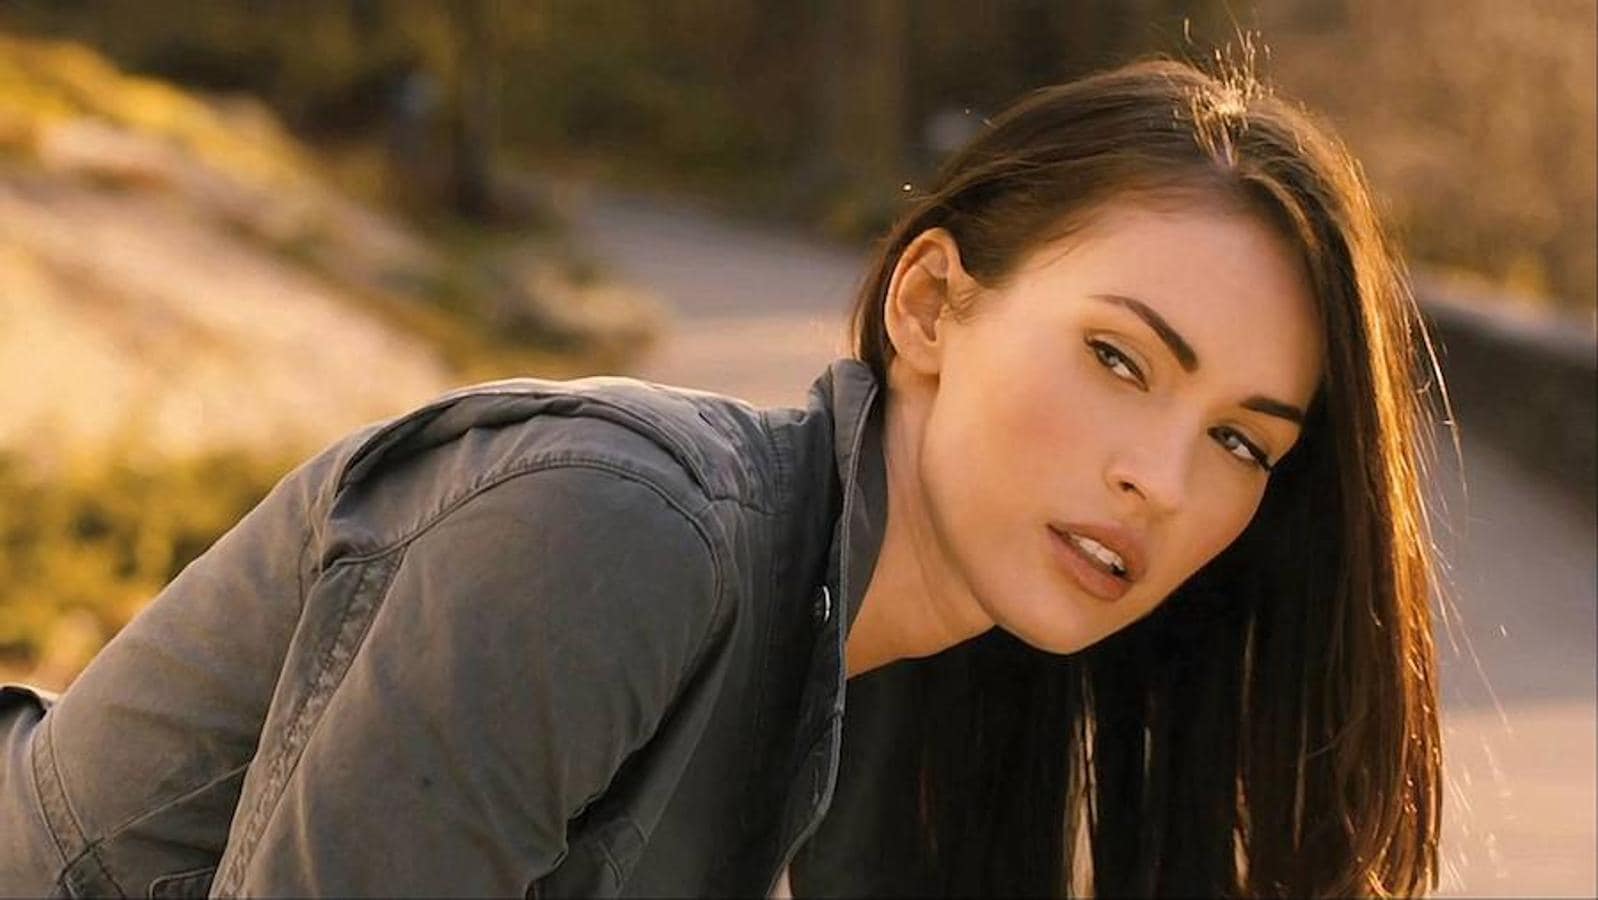 Megan Fox: Trastorno obsesivo-compulsivo. La actriz confesó que sufría «una enfermedad» que le impedía usar cualquier tipo de cubierto en un restaurante